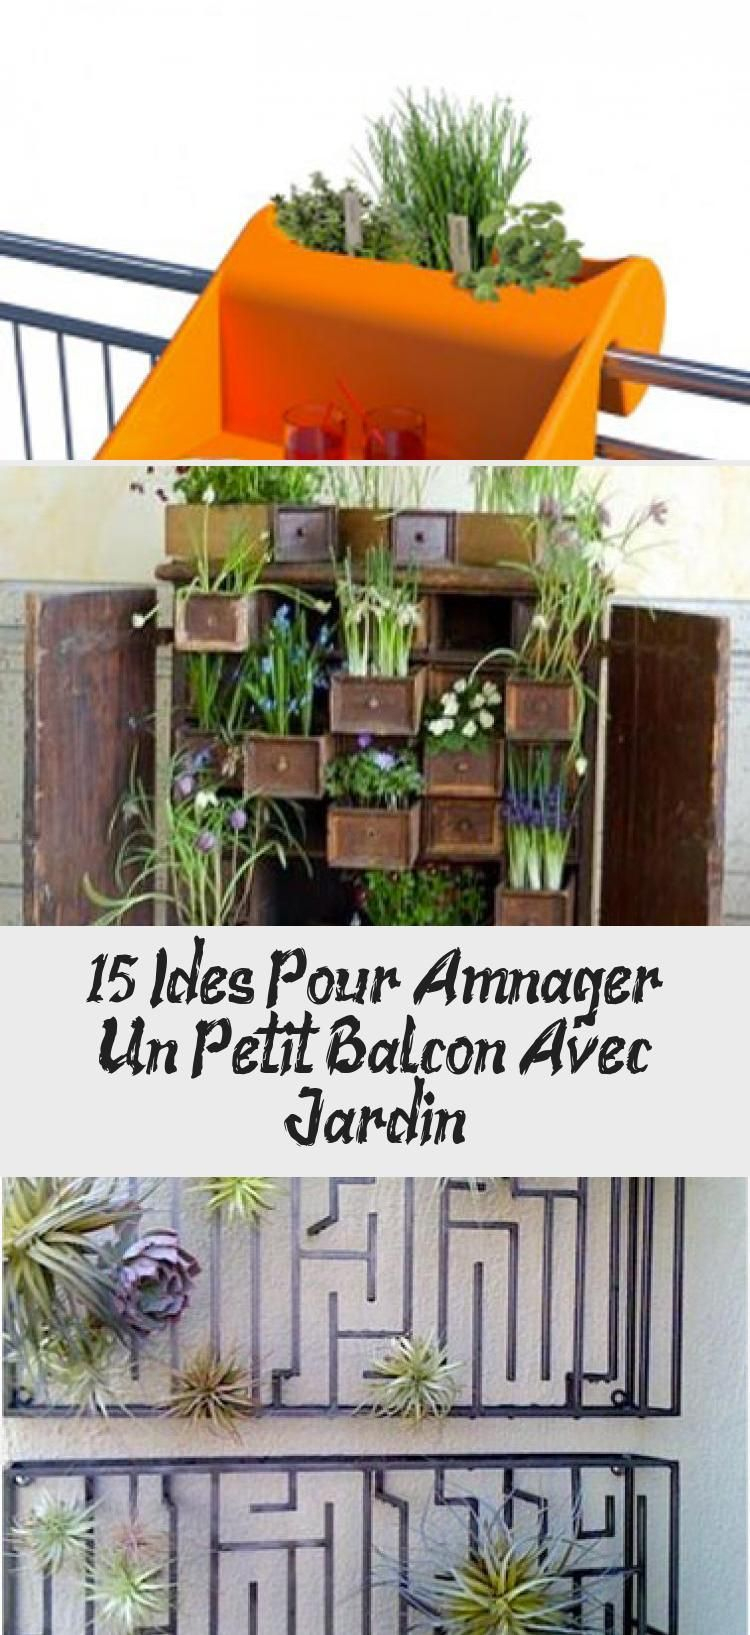 15 Idées Pour Aménager Un Petit Balcon Avec Jardin | Pot De … à Fabriquer Un Jardin Suspendu